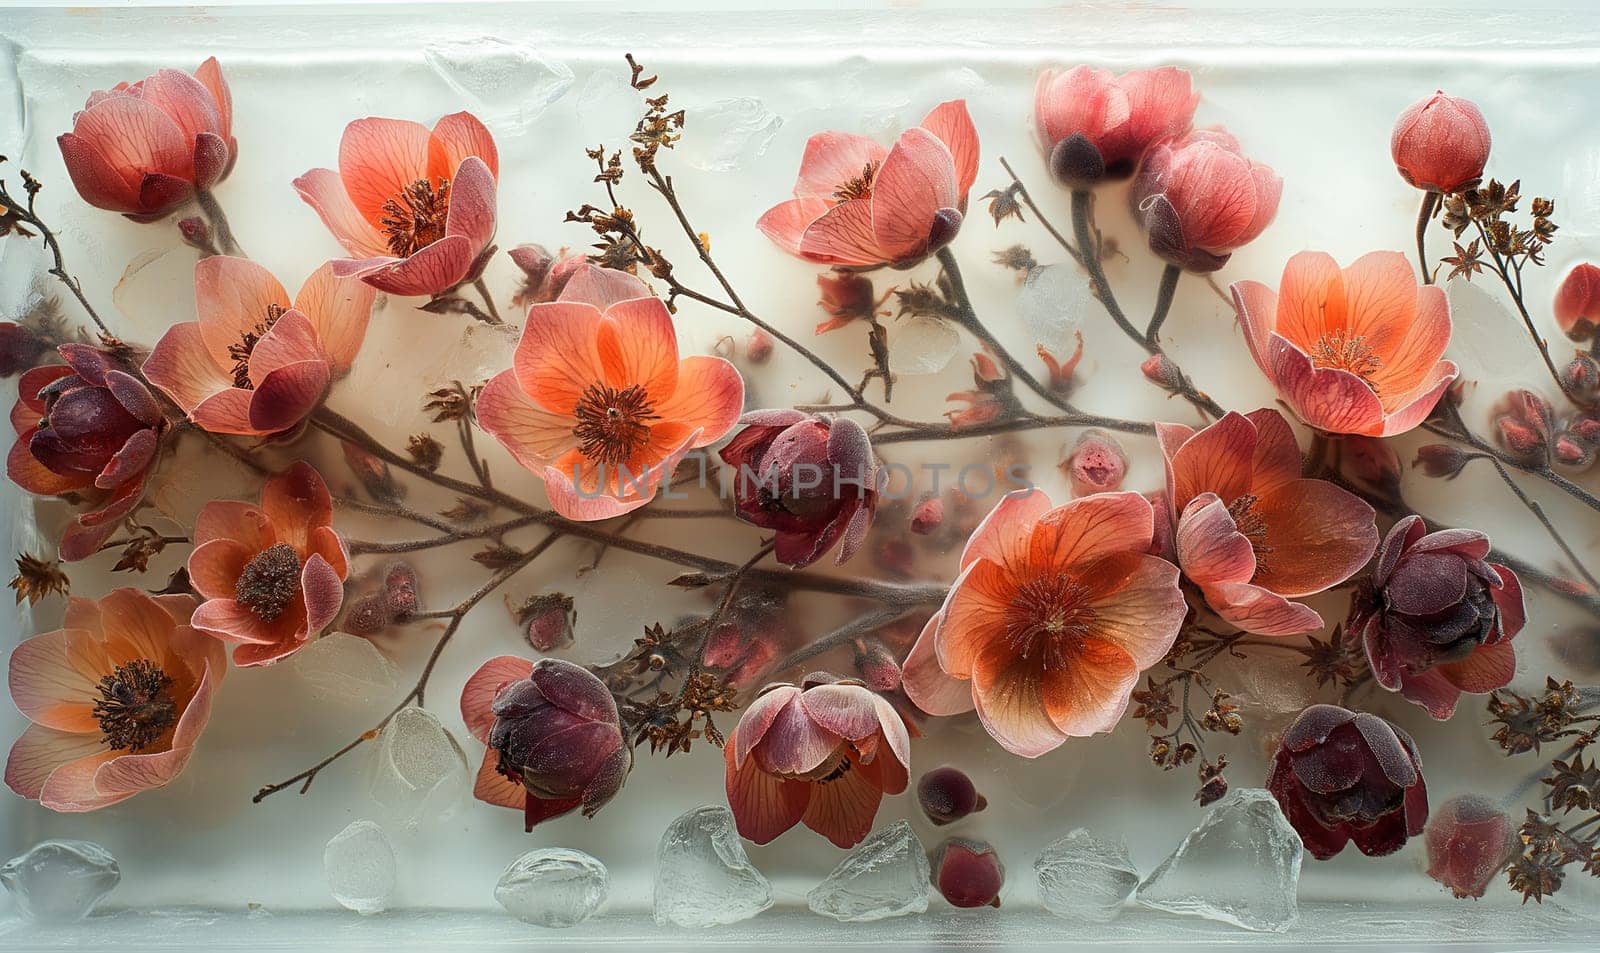 Flower arrangement in epoxy resin. Selective focus